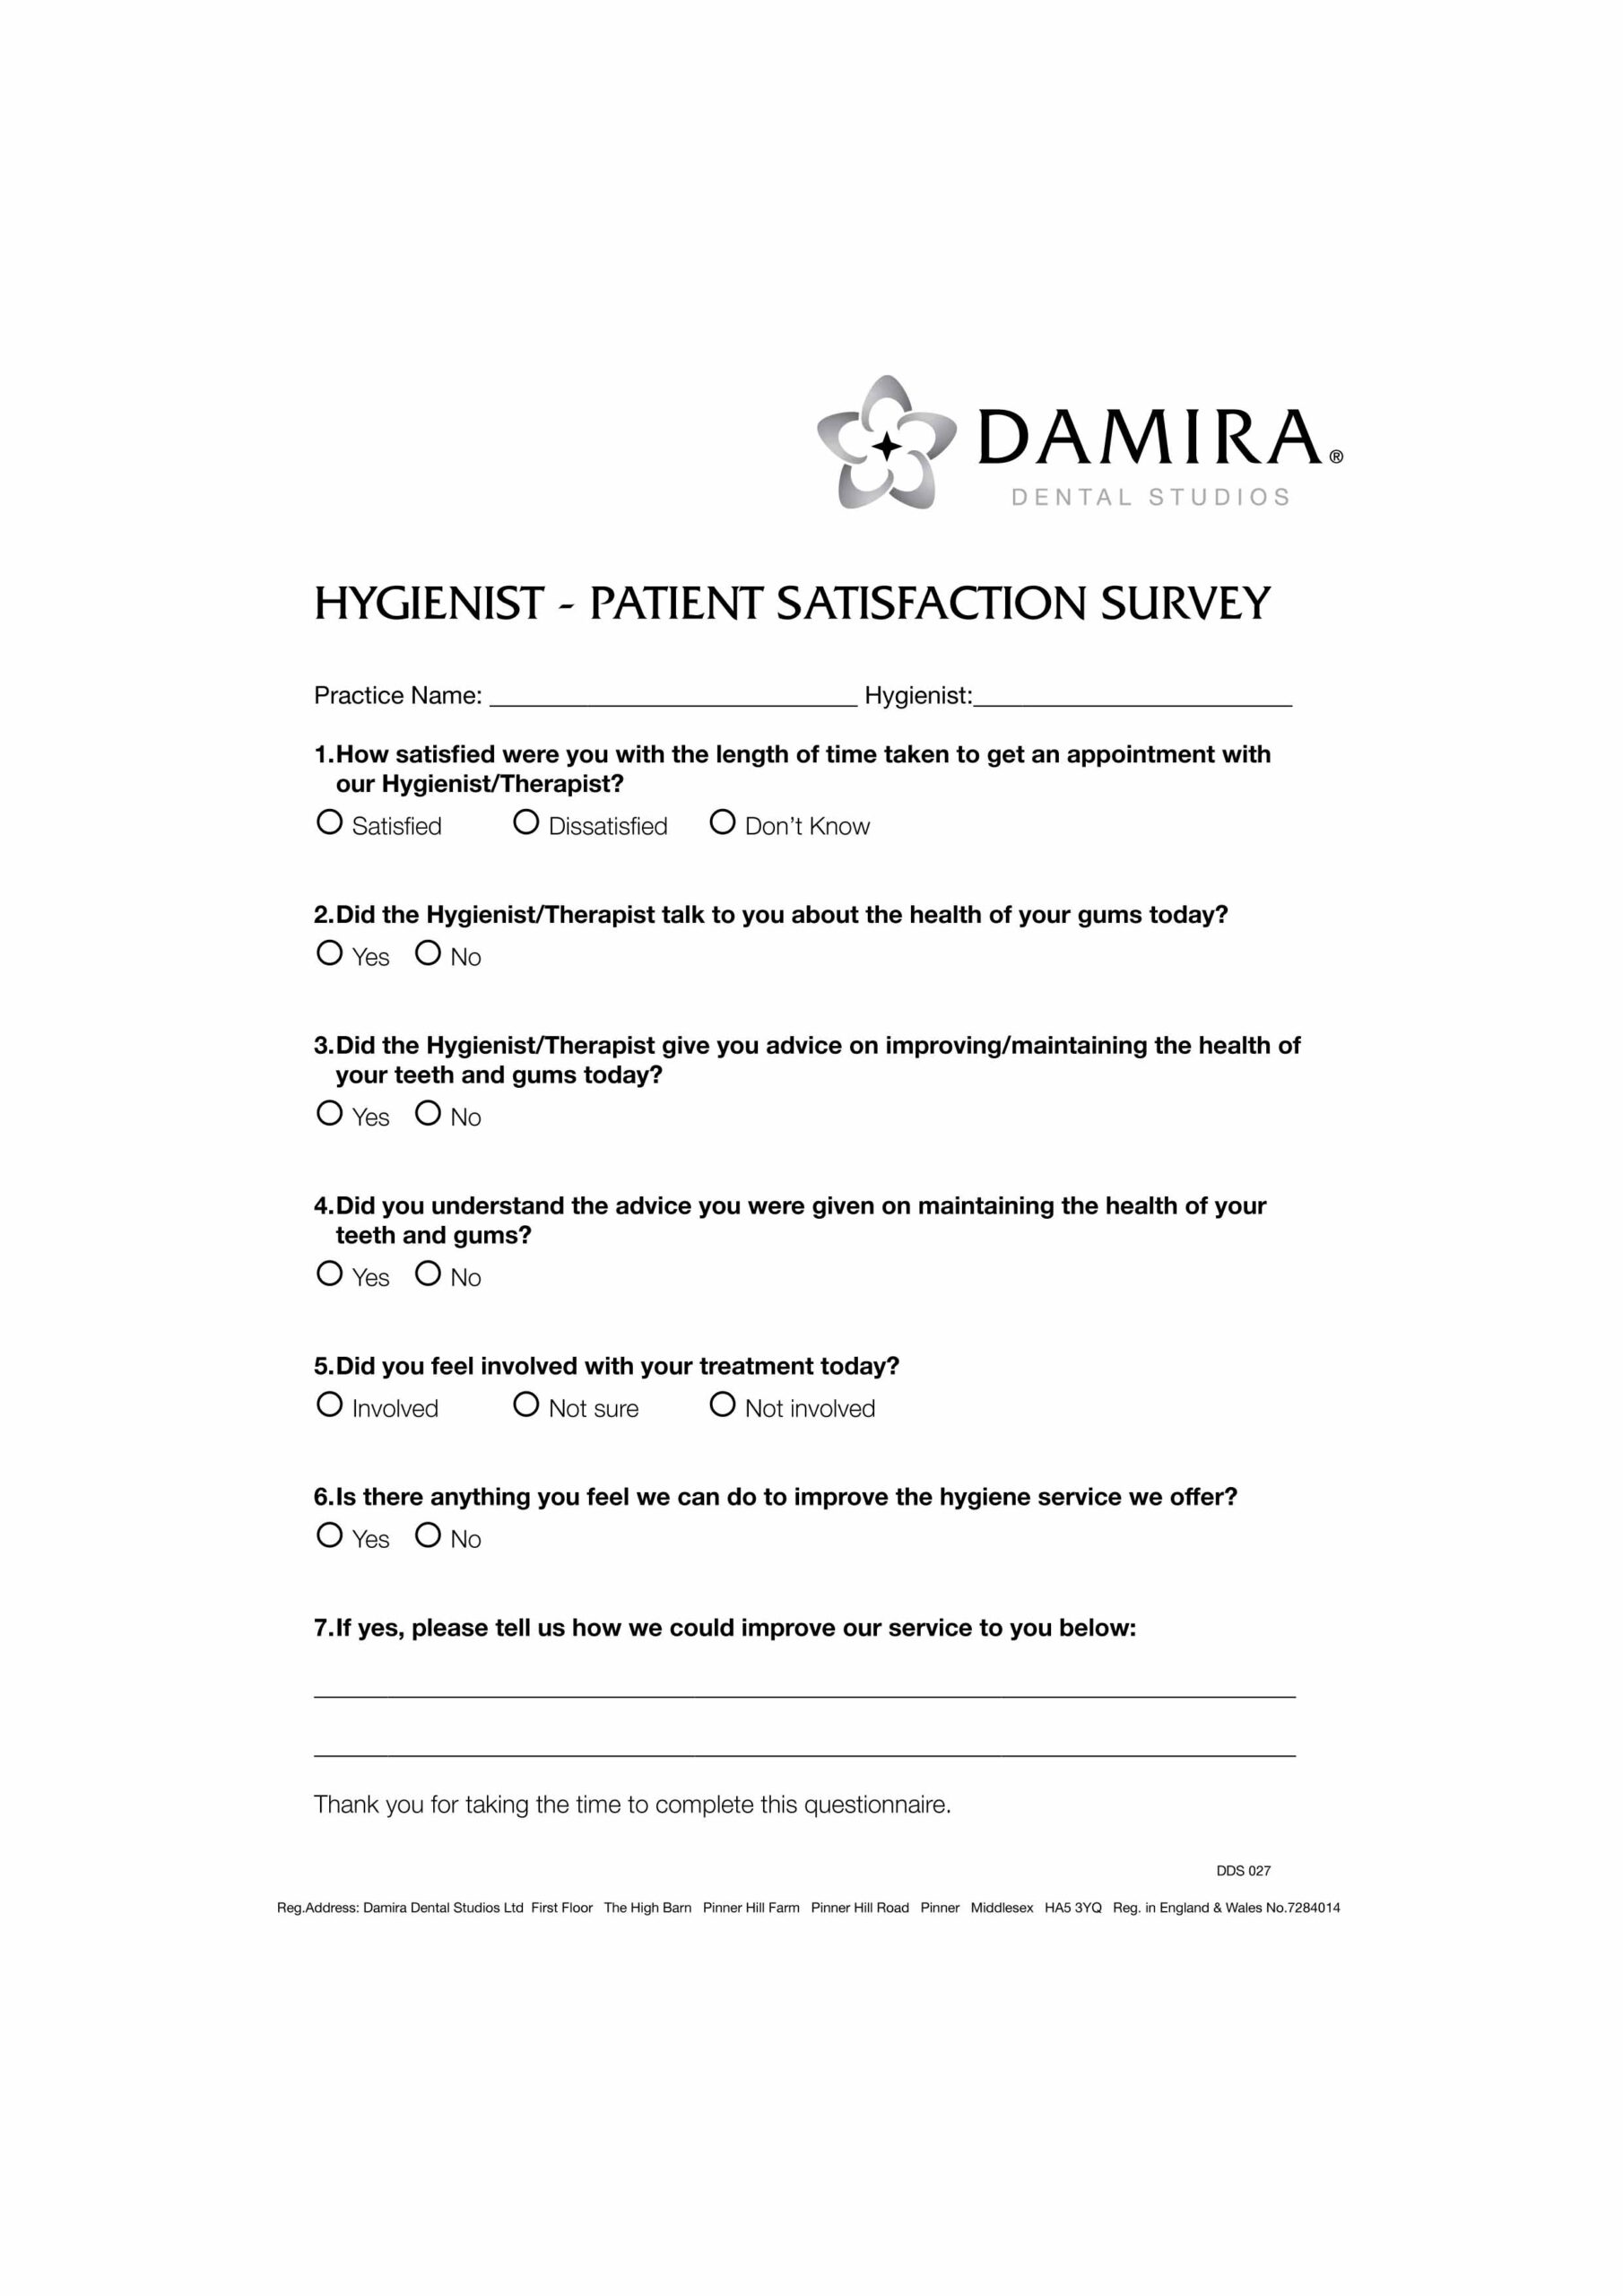 DDS 027 Hygienist - Patient Satisfaction Survey